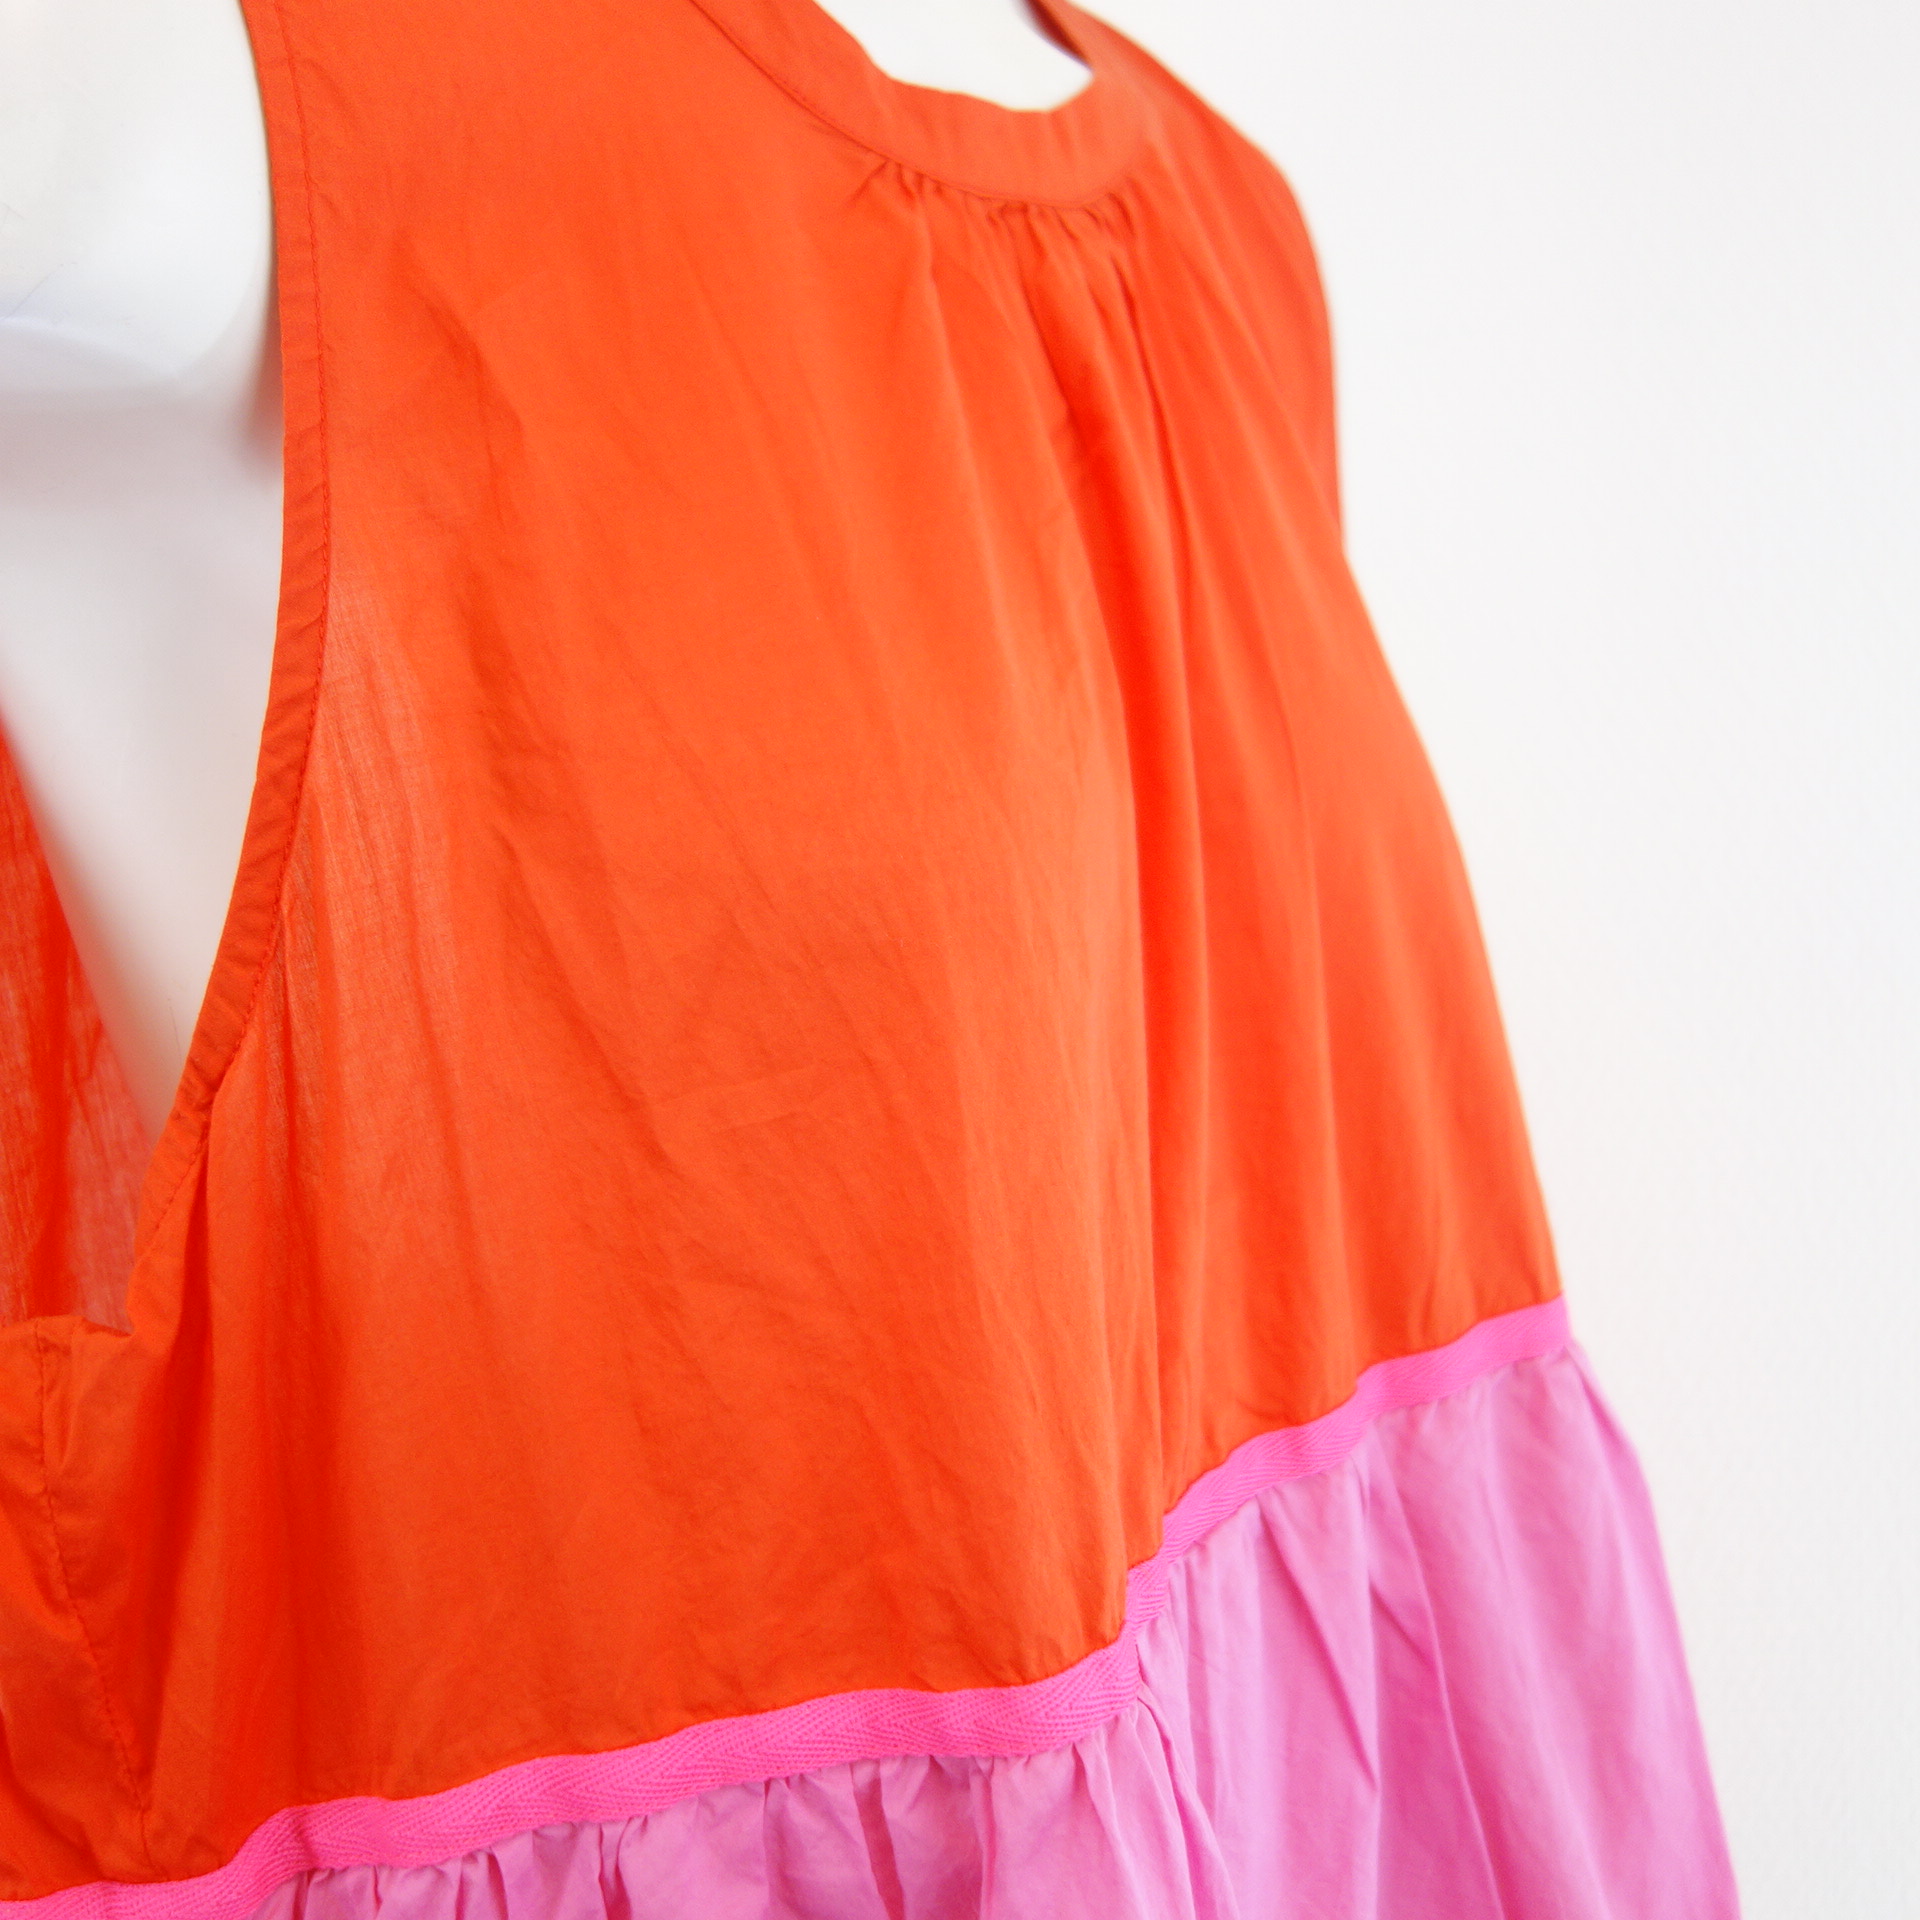 EMILY VAN DEN BERGH Damen Kleid Hängerchen 46 Pink Grün Orange 100% Baumwolle